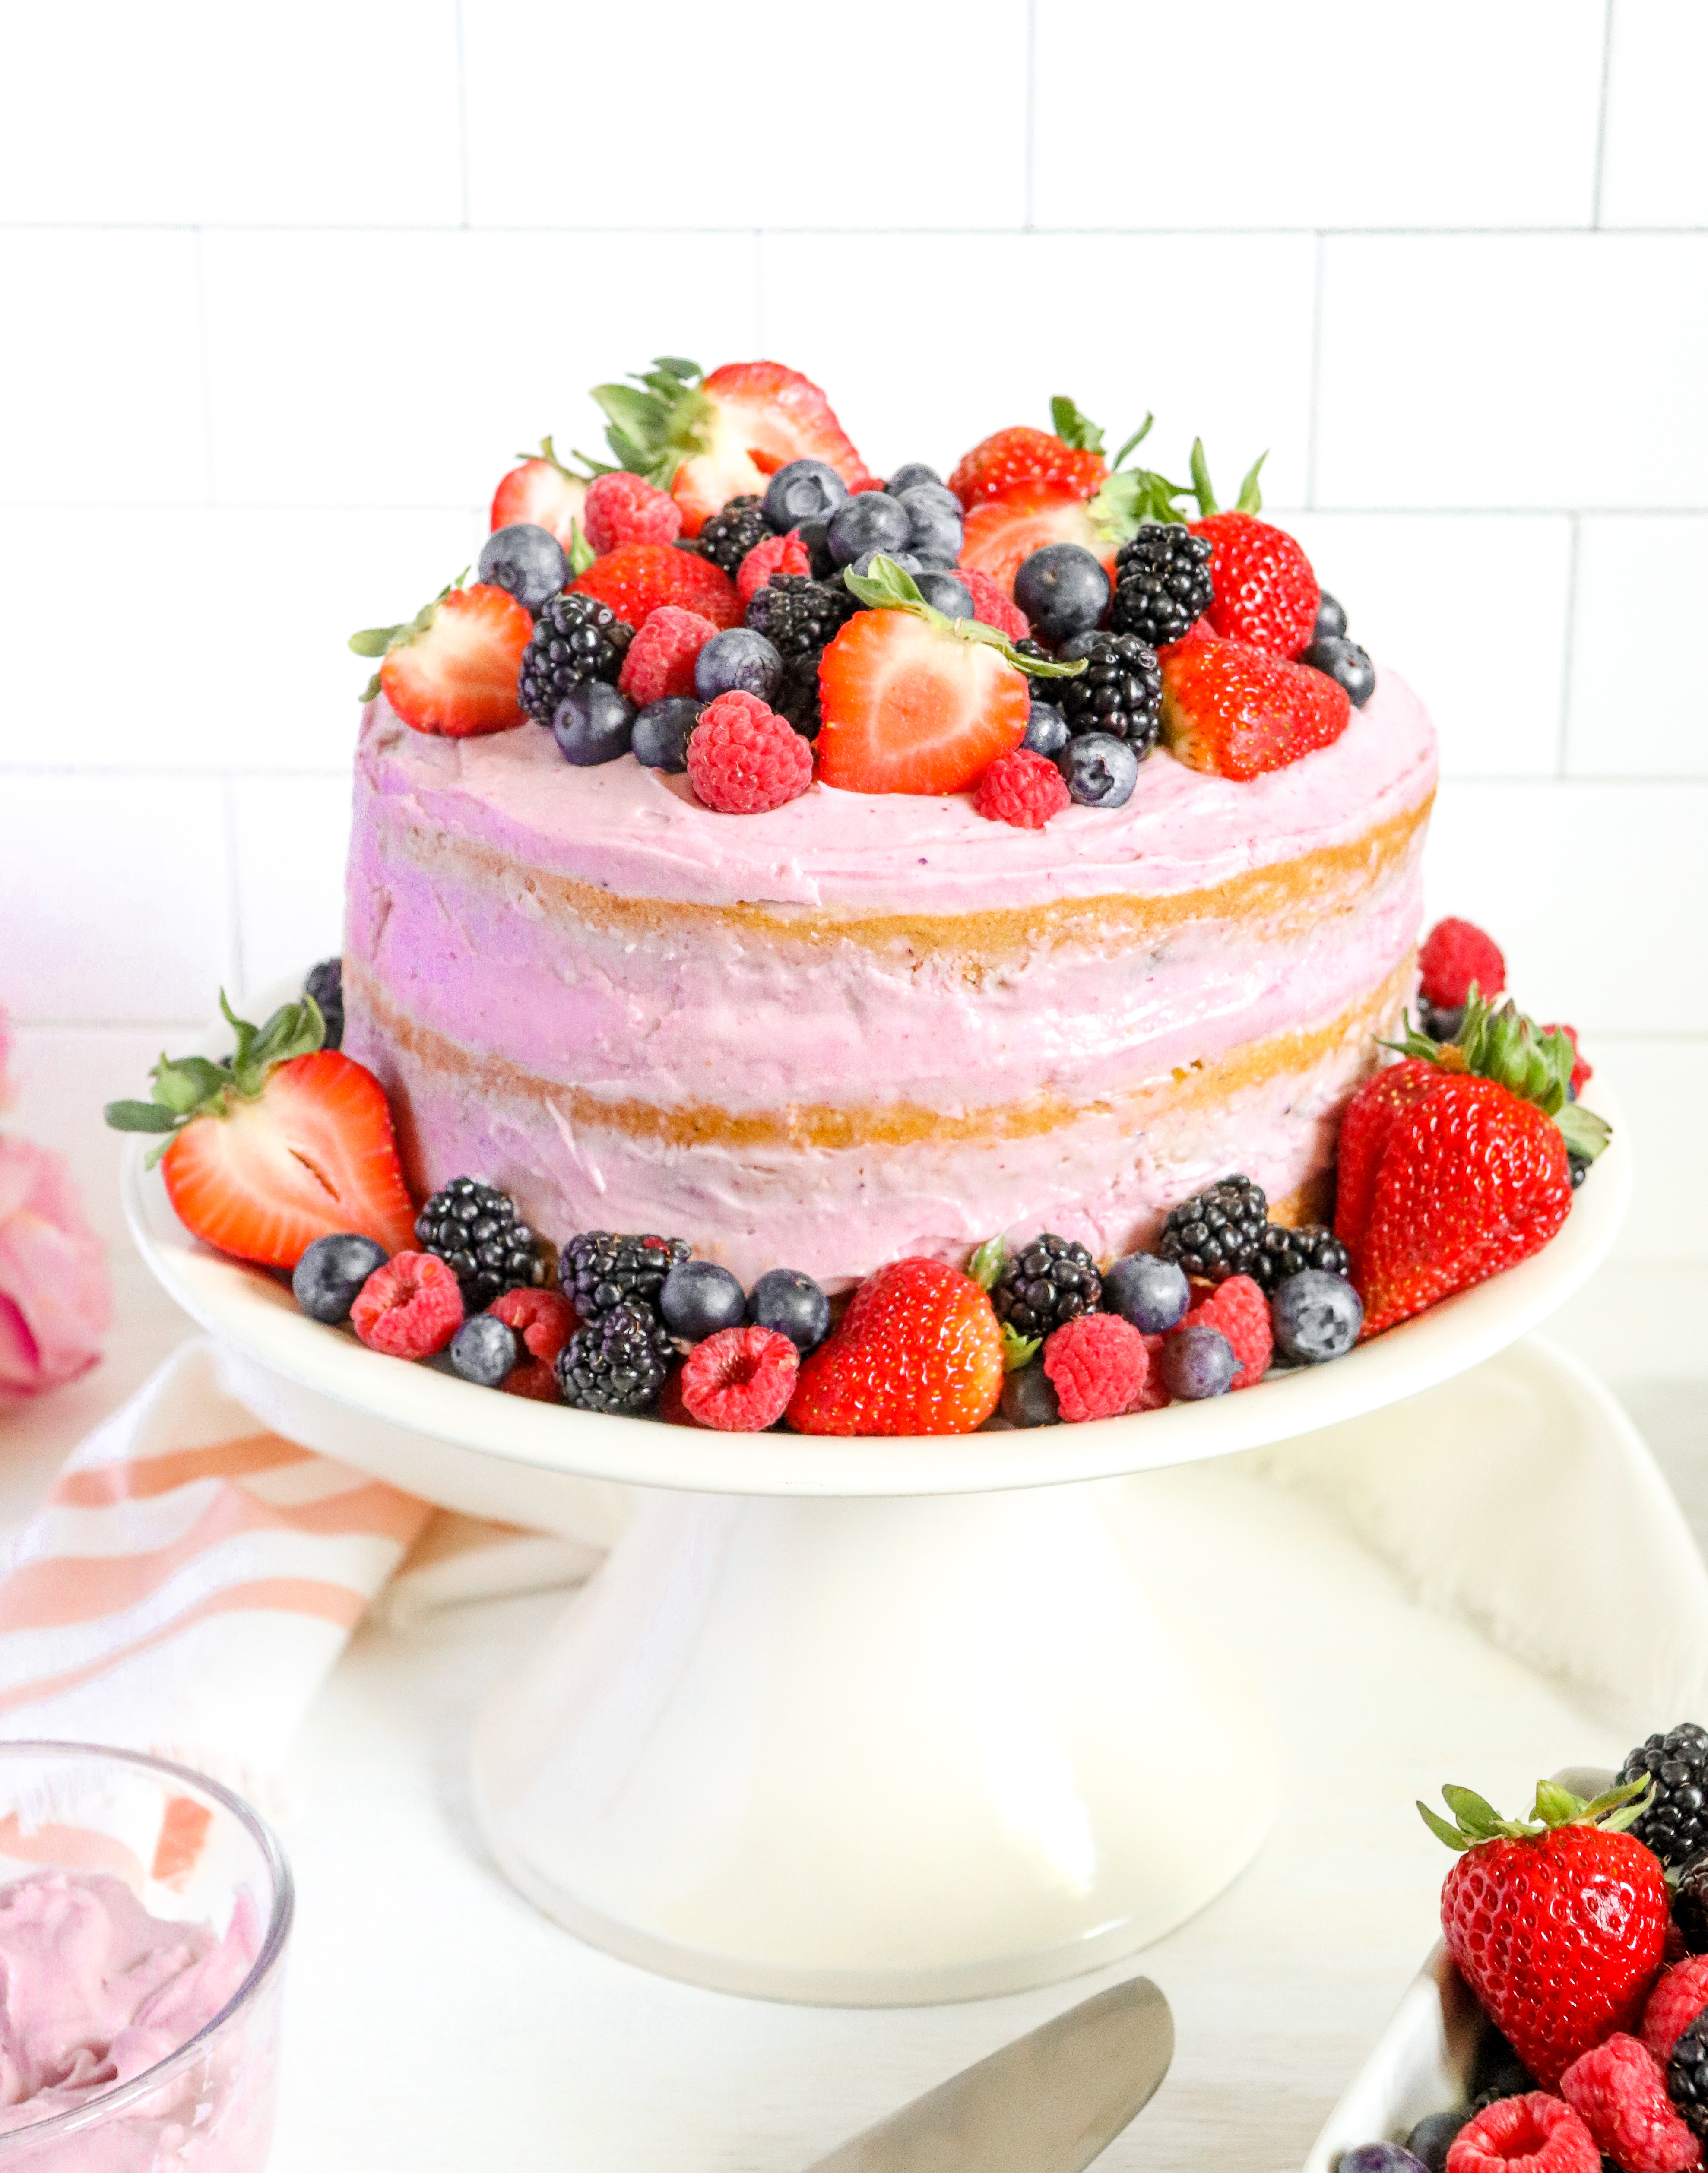 Very Berry Vanilla Layer Cake